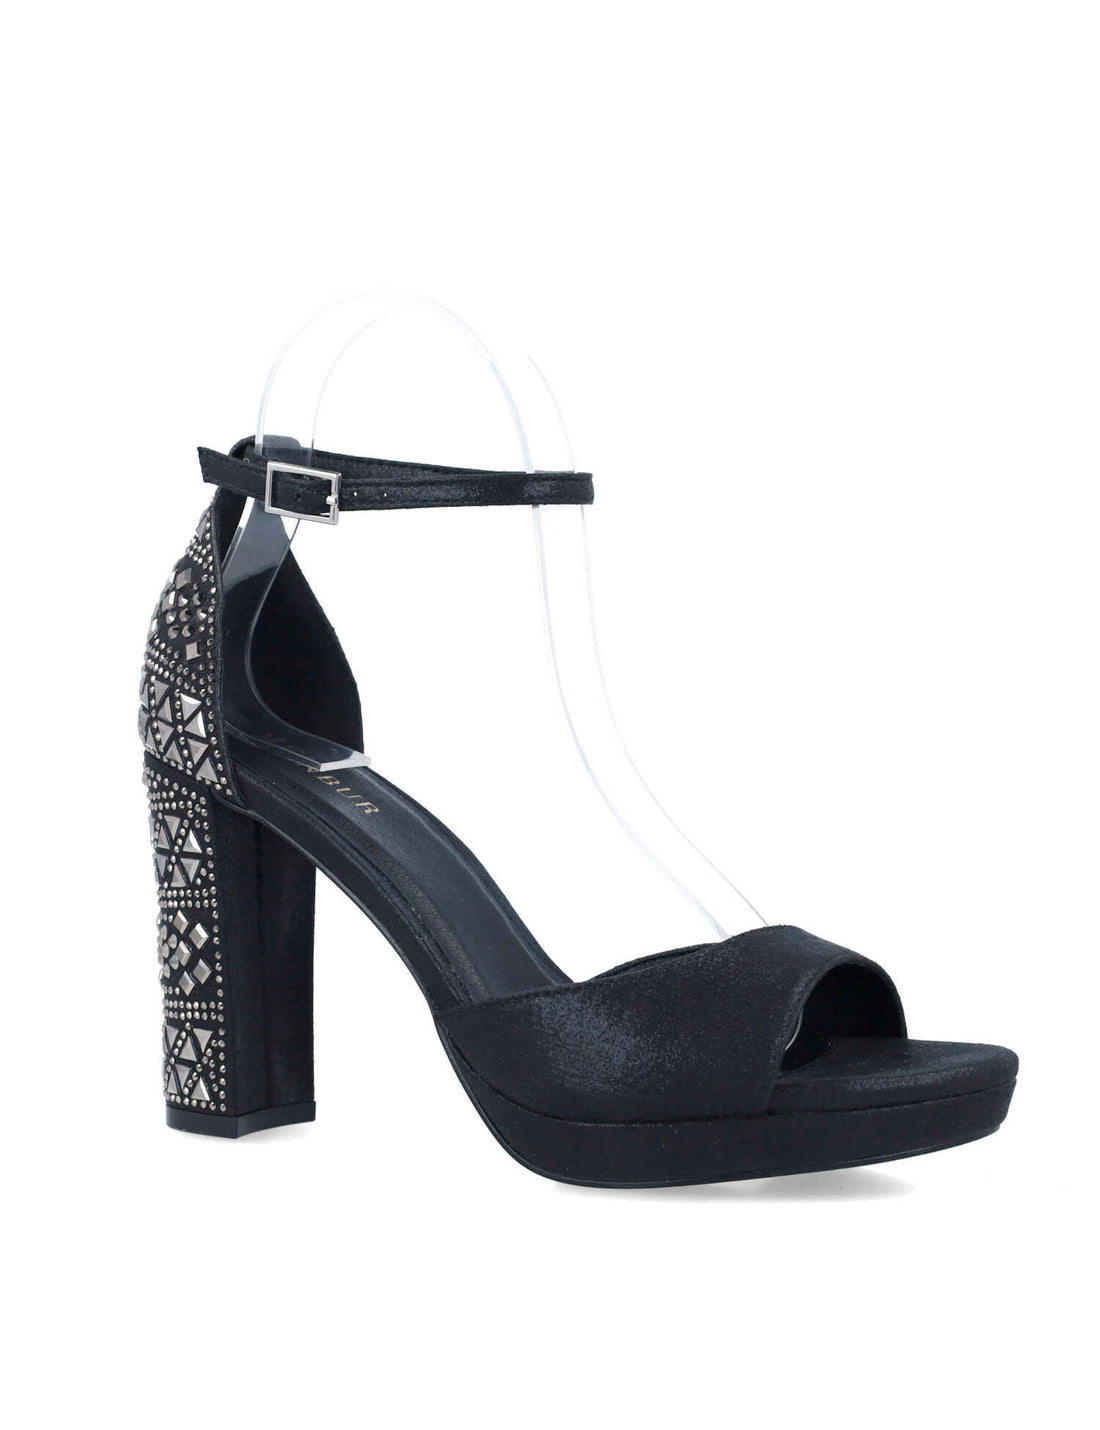 Black Embellished High-Heel Sandals_24879_01_02